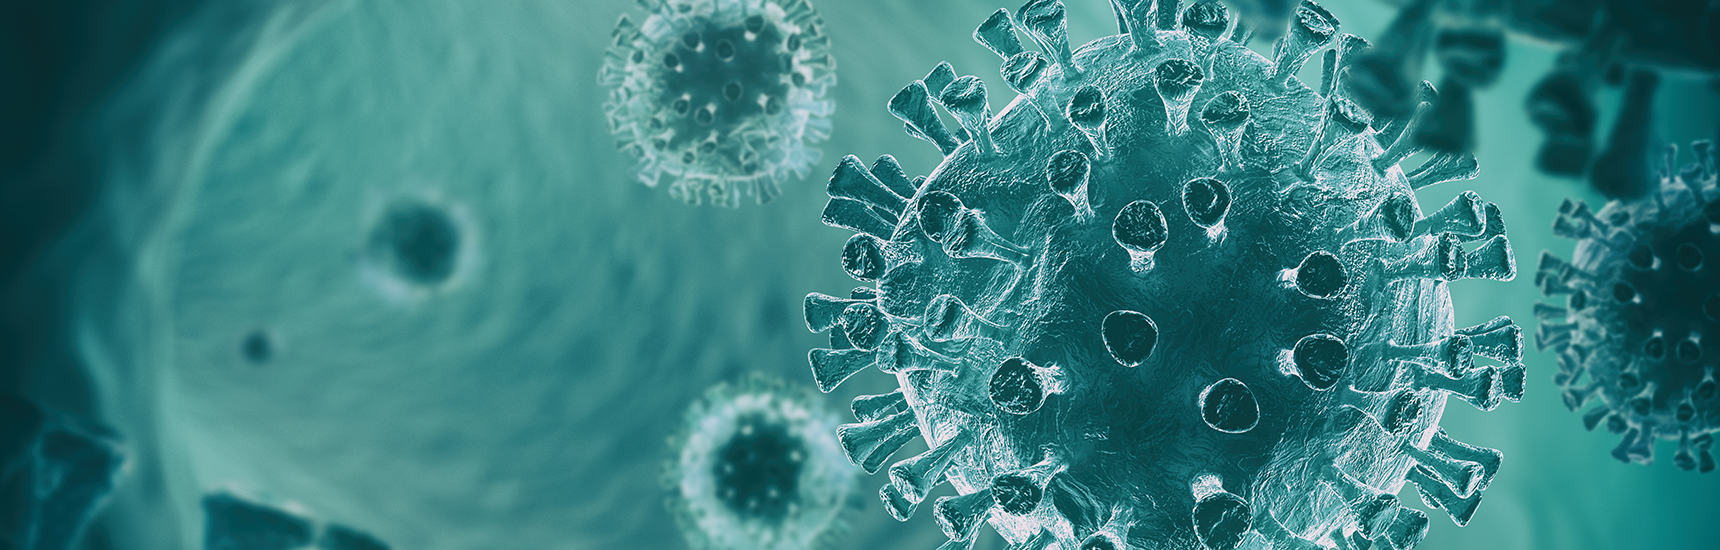 Coronavirus in blauer Farbe